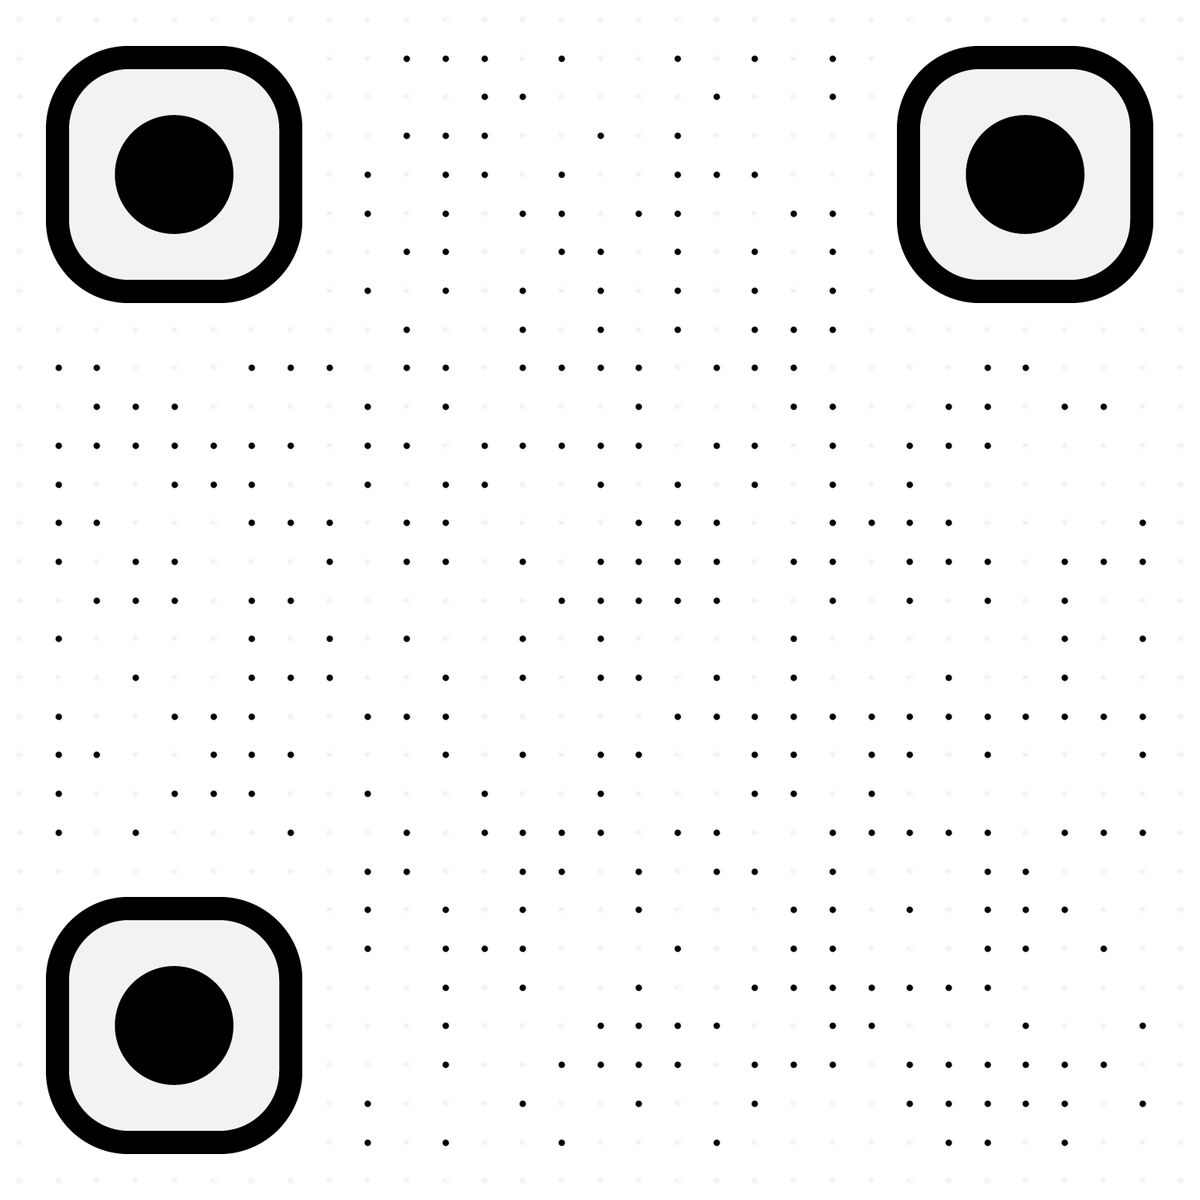 可上传背景码自定义DIY工具码黑白点阵-使用指引说明二维码生成器-平面静态-无背景码